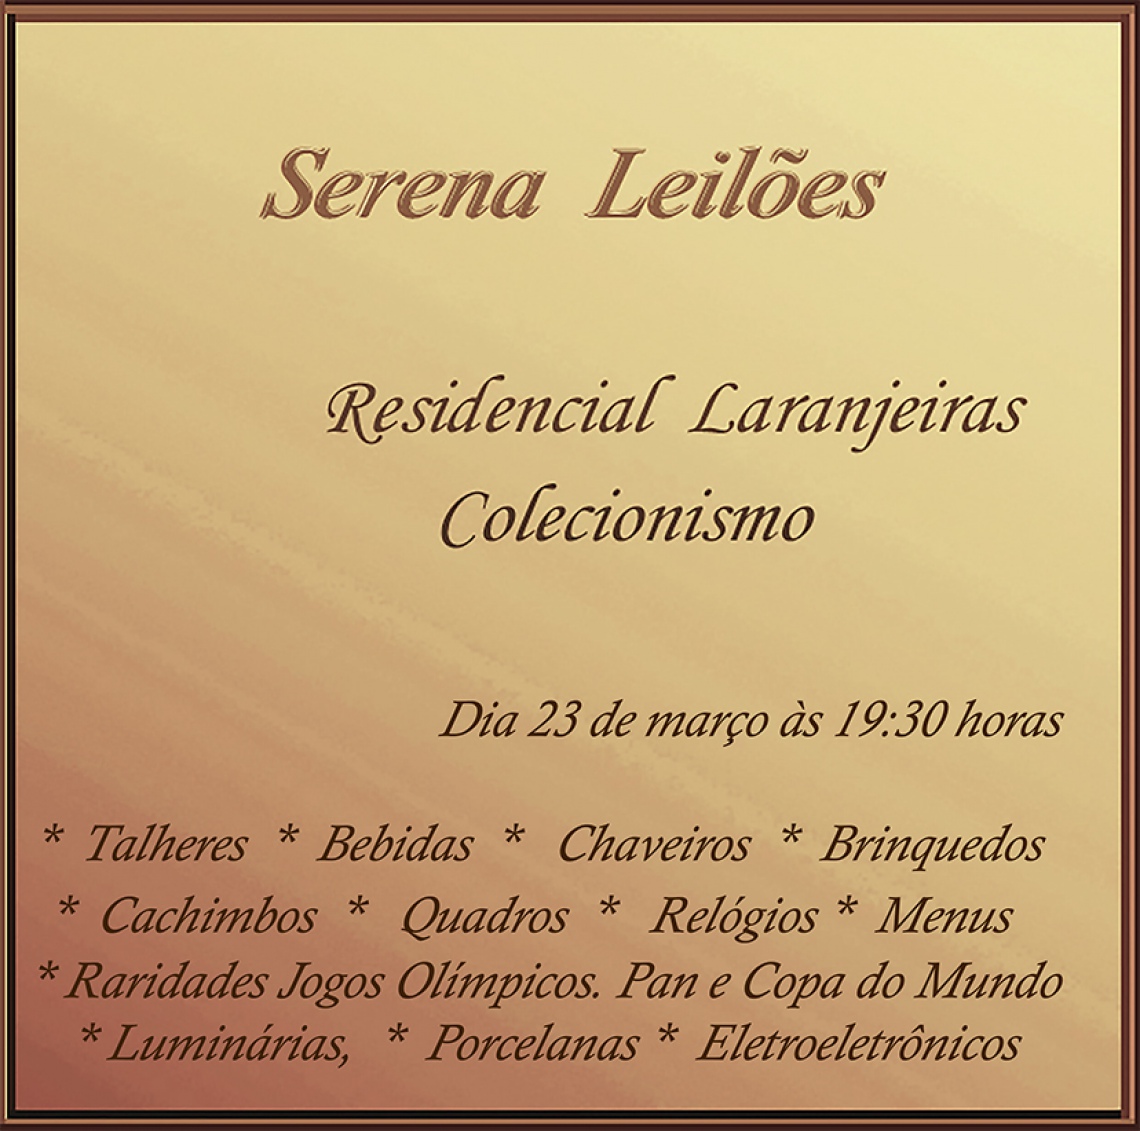 Colecionismo Residencial - Serena Leilões XVIII